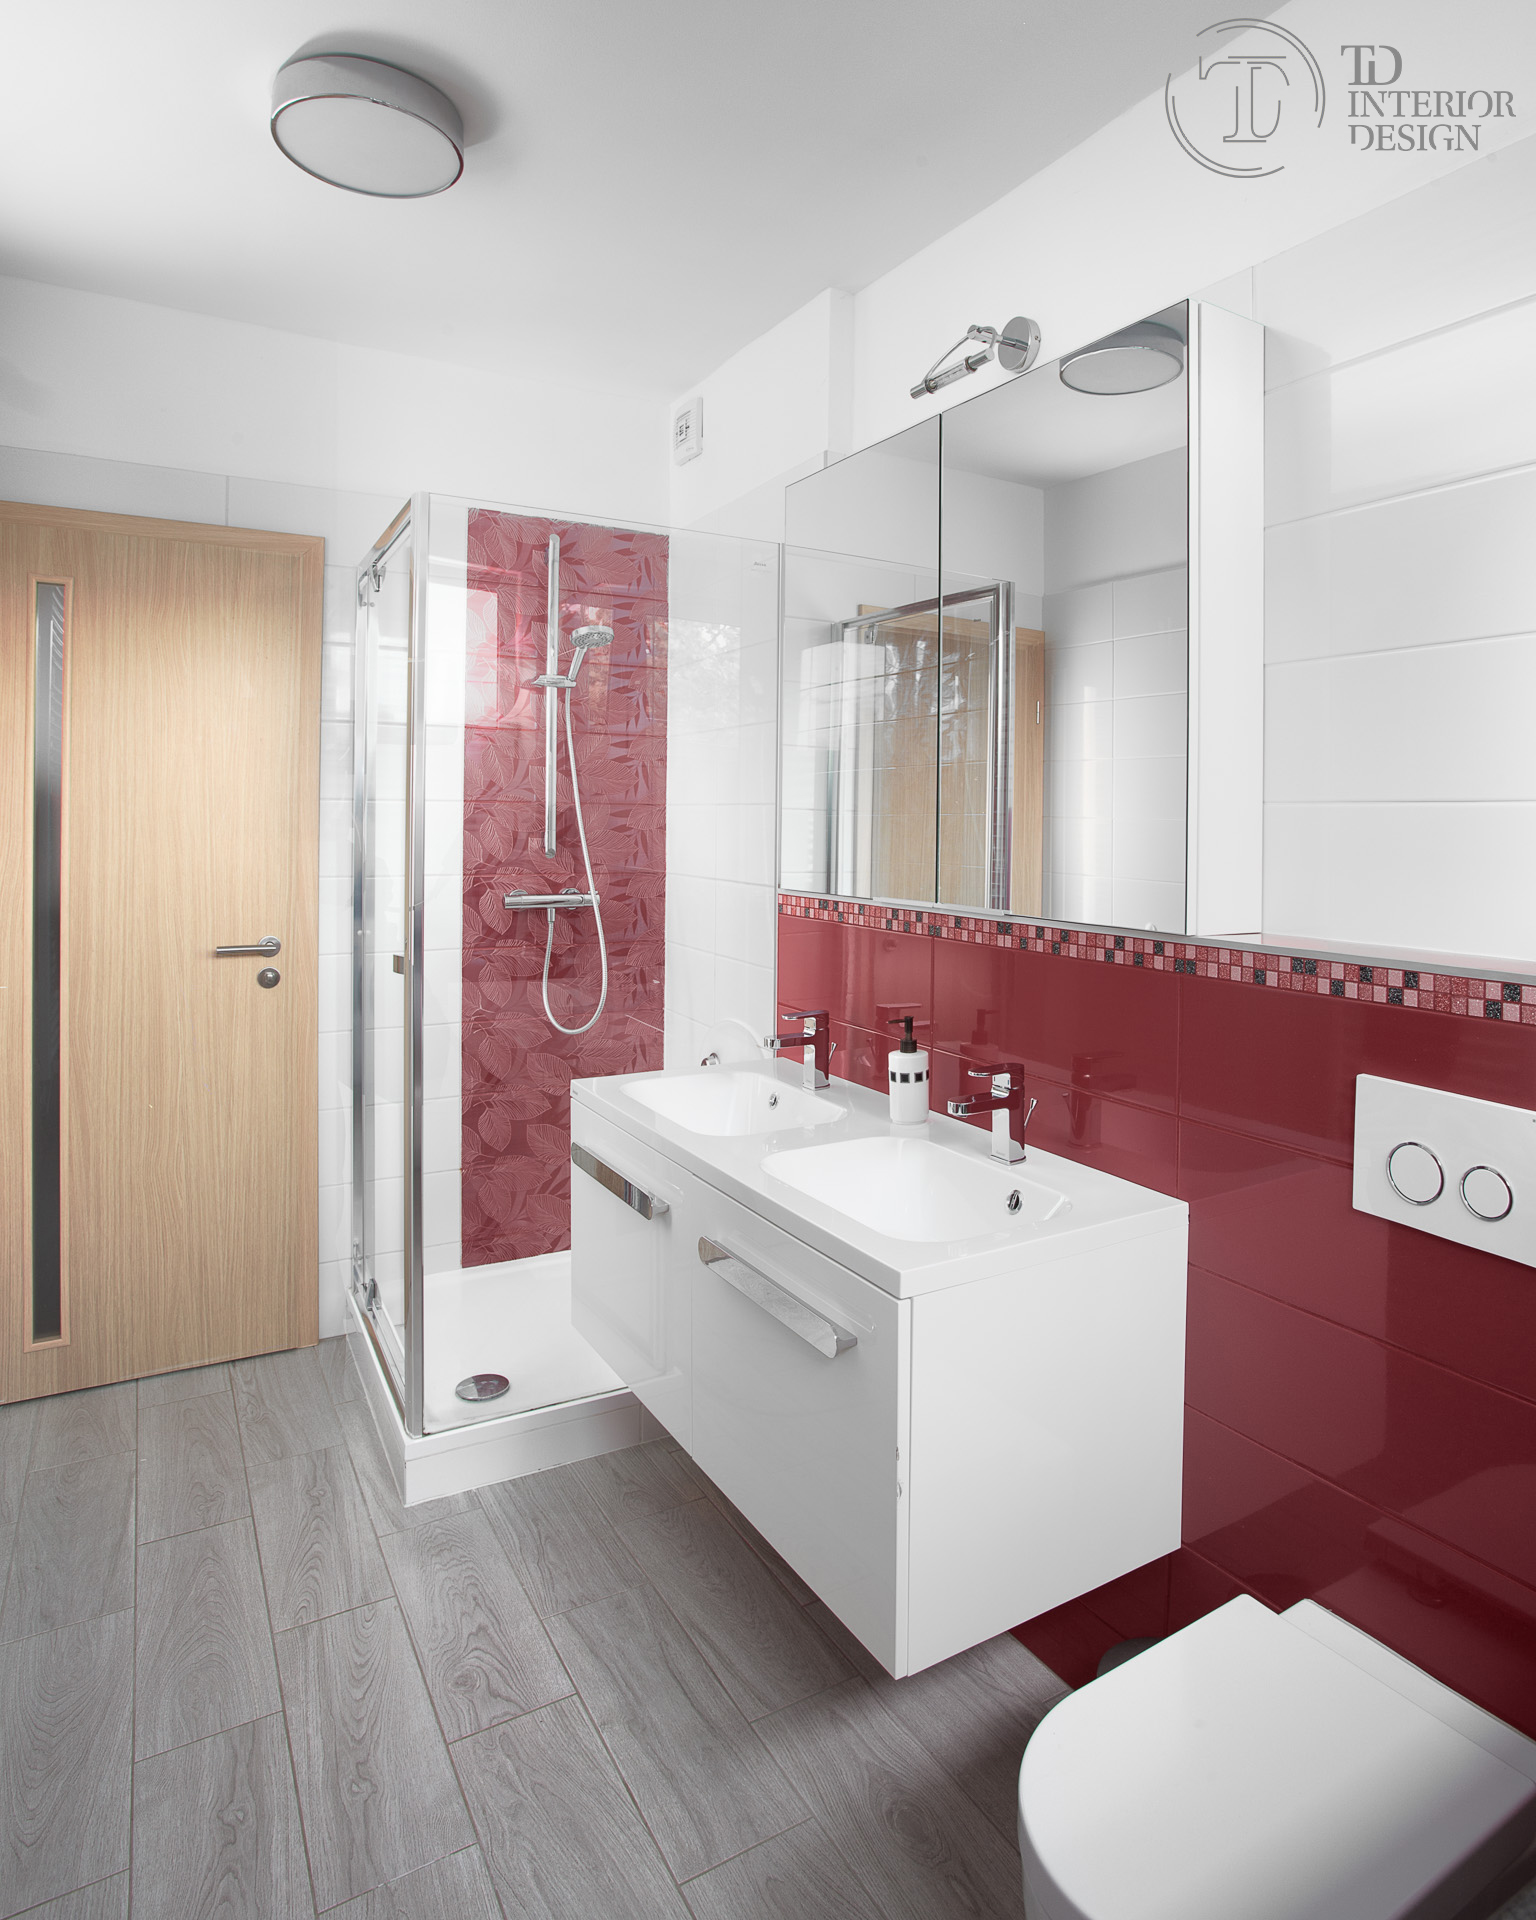 A Chrome fürdőszoba koncepcióval teljeskörűen felszerelhető bármilyen fürdőszoba.